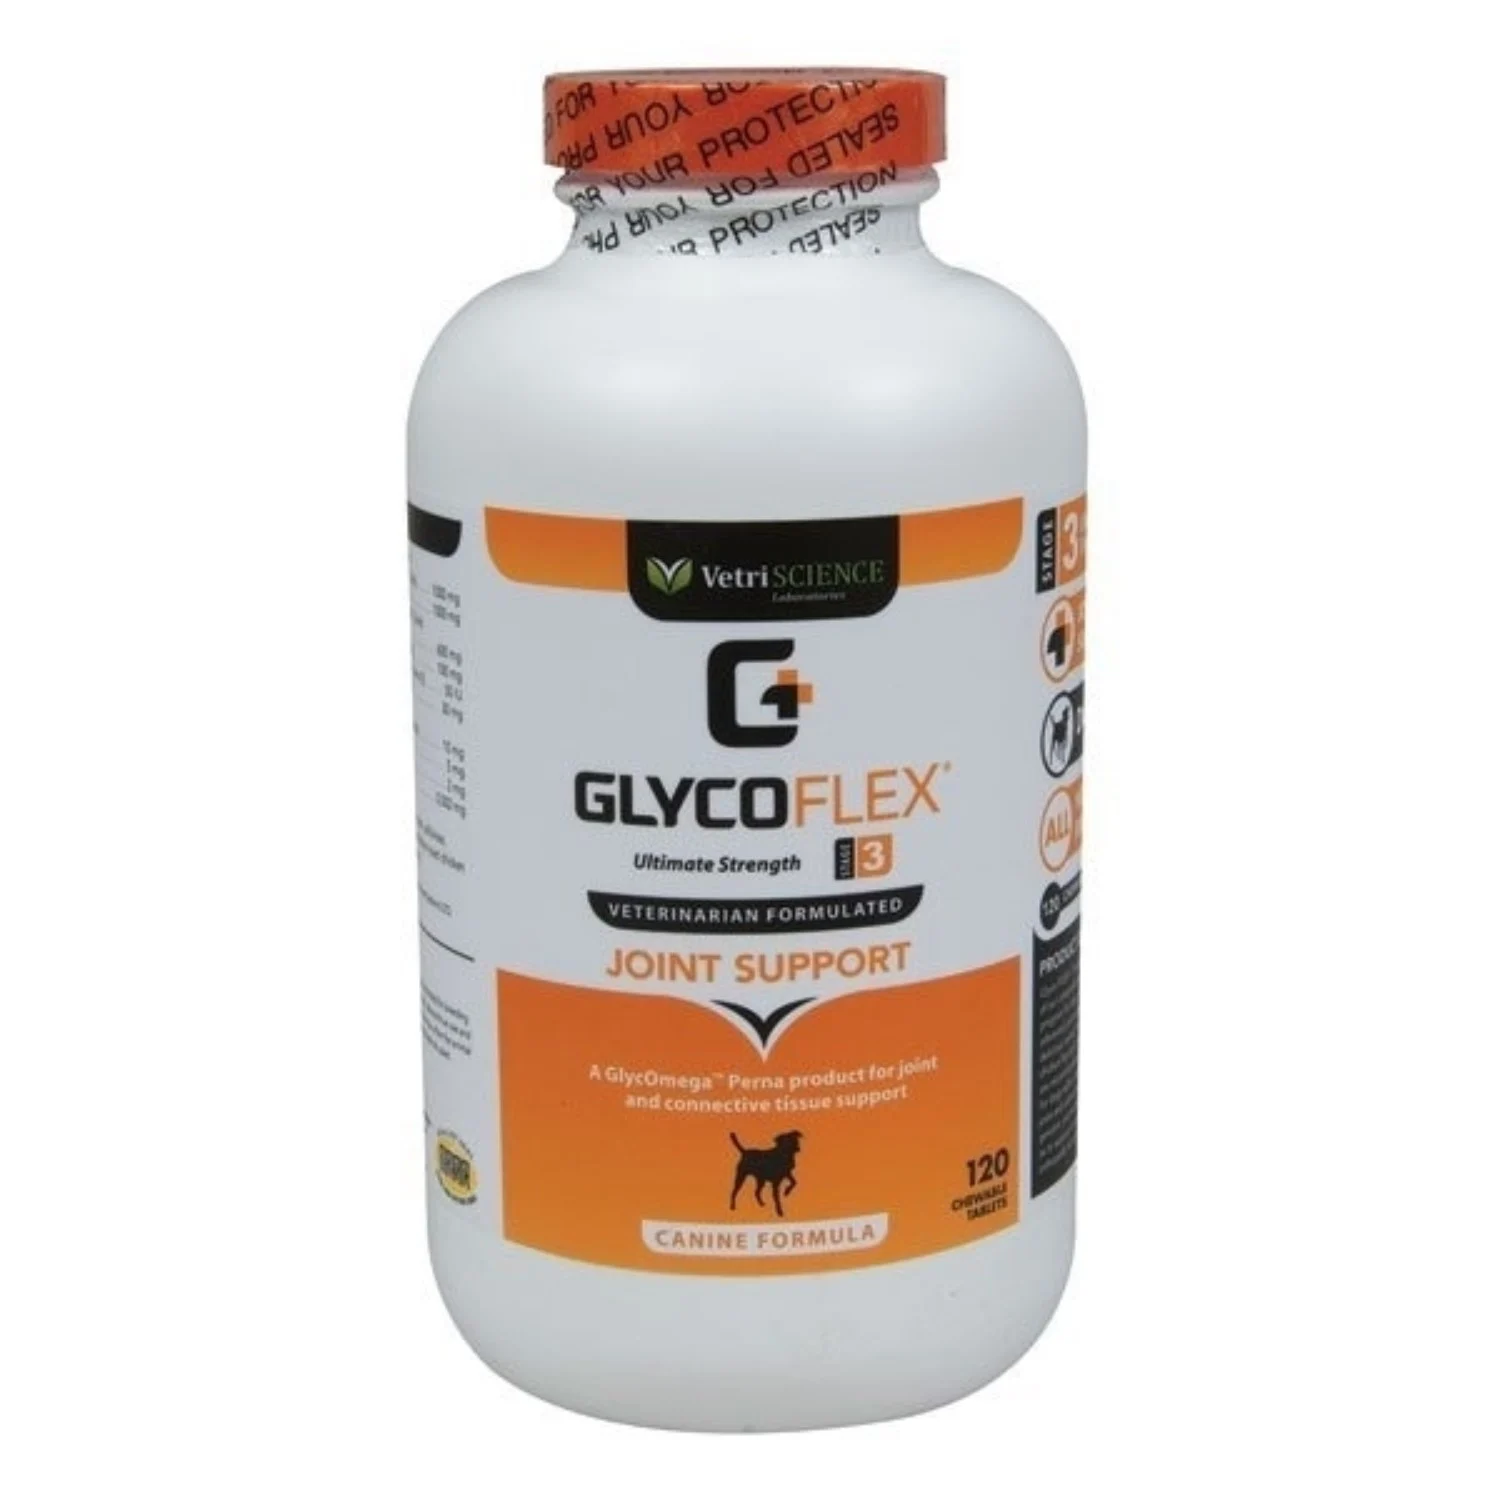 Supliment pentru suportul articulatiilor la caini Glycoflex 3, 120 tablete, Vetri Science